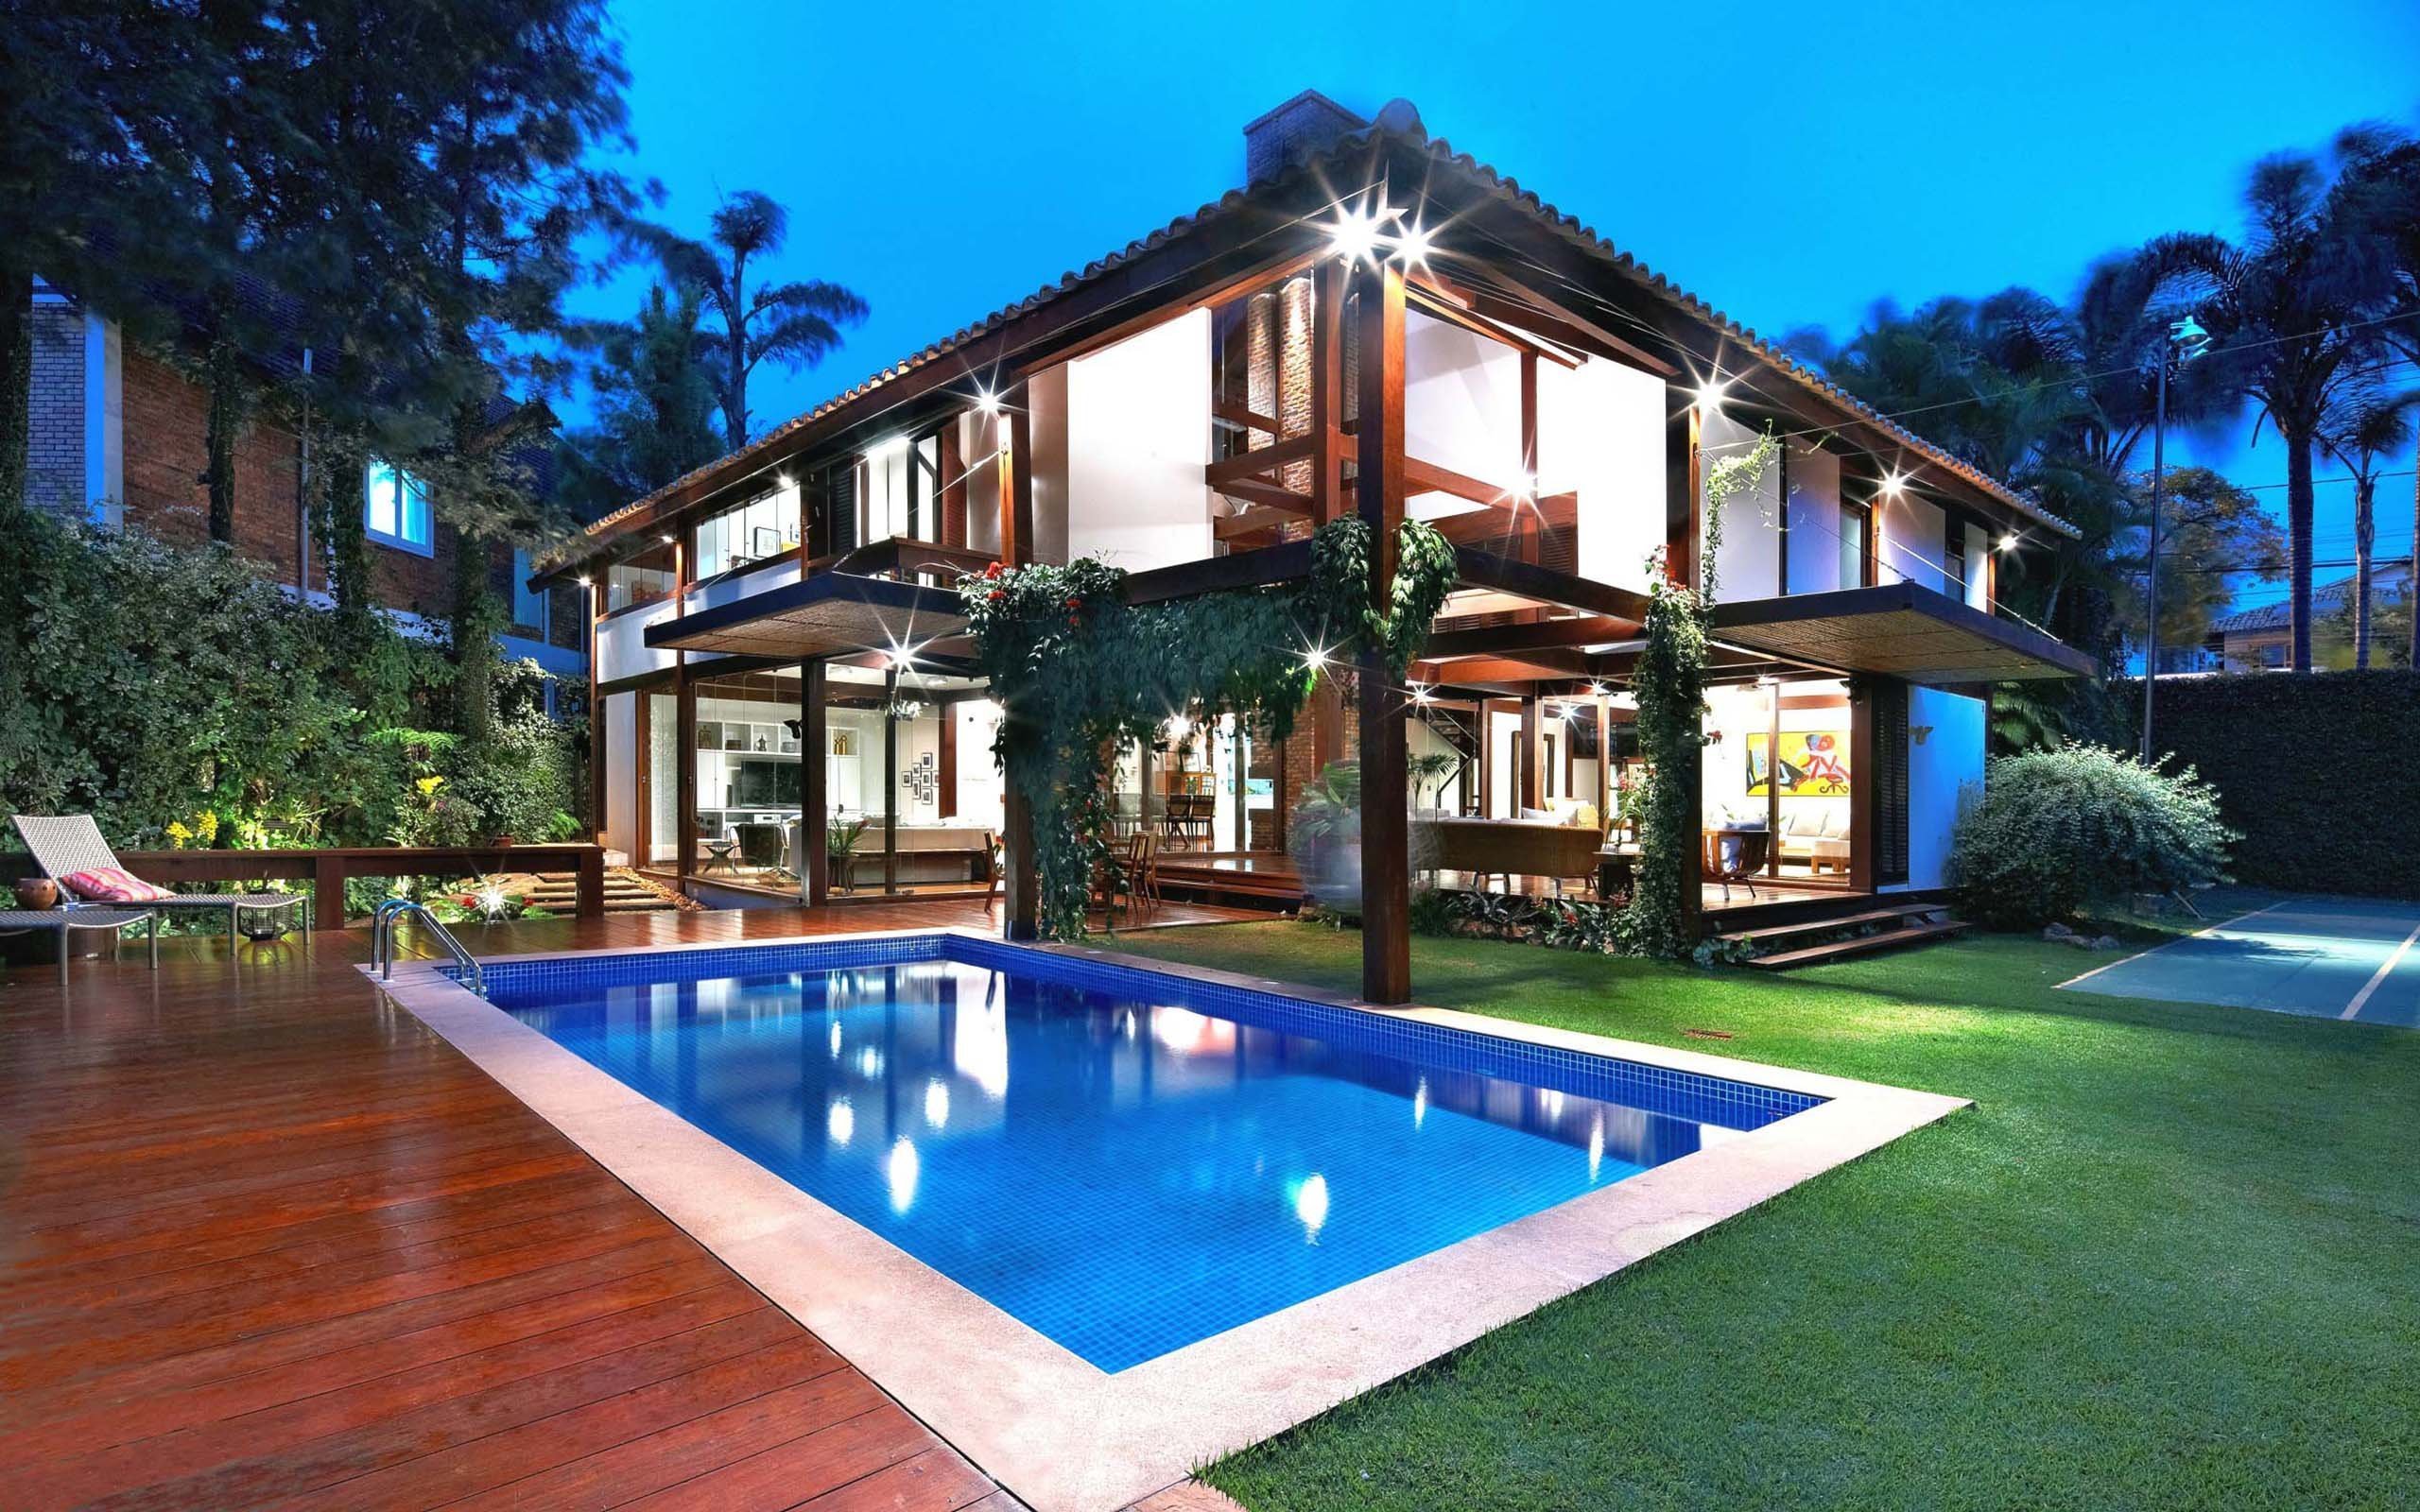 We house is beautiful. Вилла в Бразилии. Дом с бассейном. Красивый особняк с бассейном. Большой красивый дом.